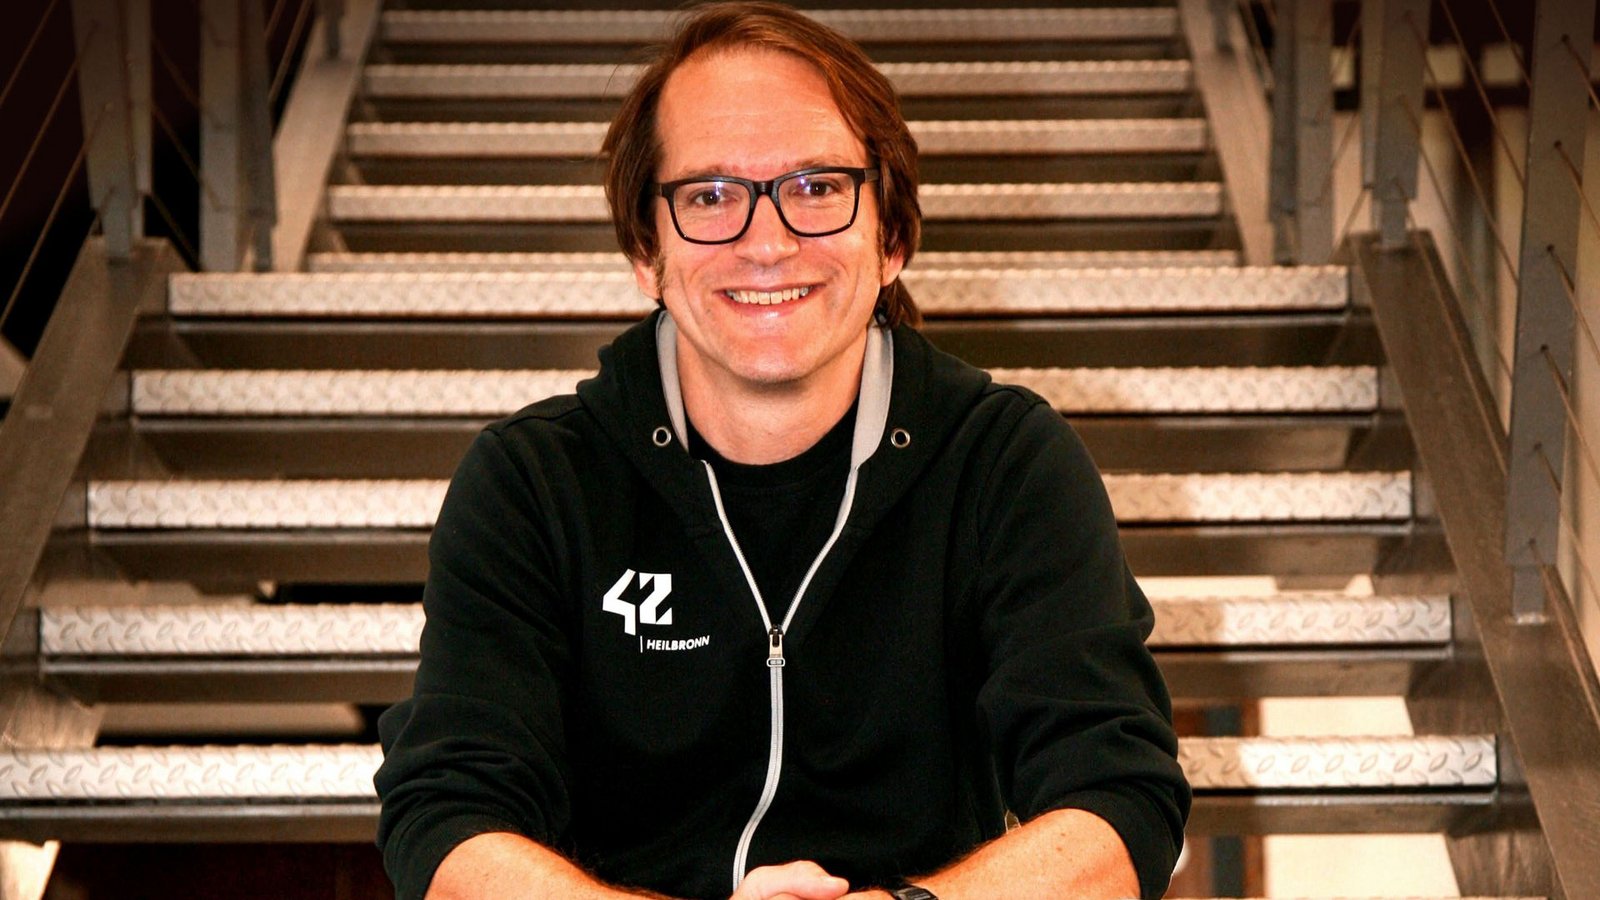 Thomas Bornheim ist der Geschäftsführer von 42 Heilbronn. Zuvor hat er bei Google gearbeitet.Foto: Jan Söfjer